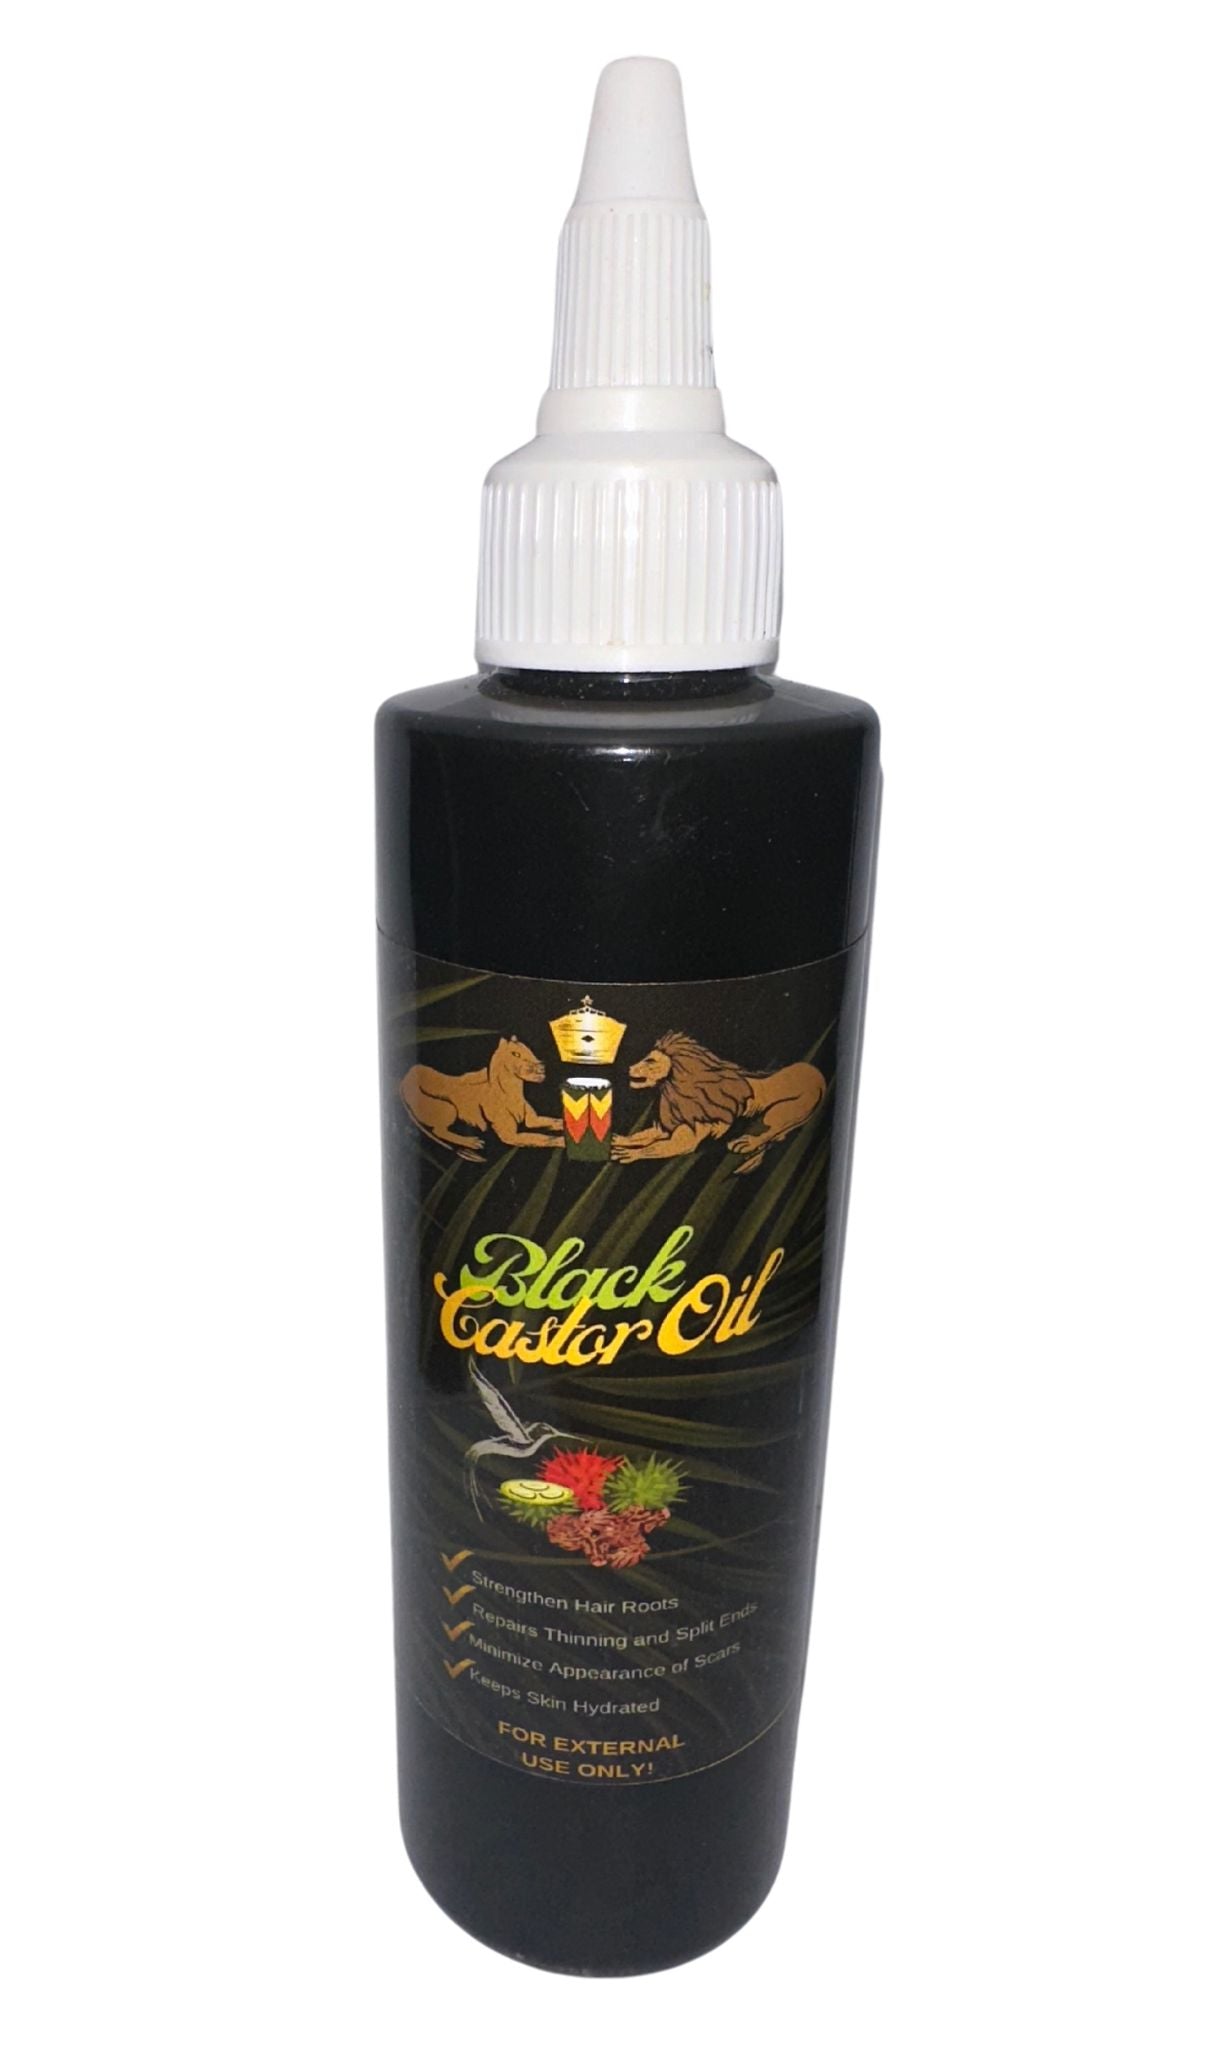 Black Castor Oil